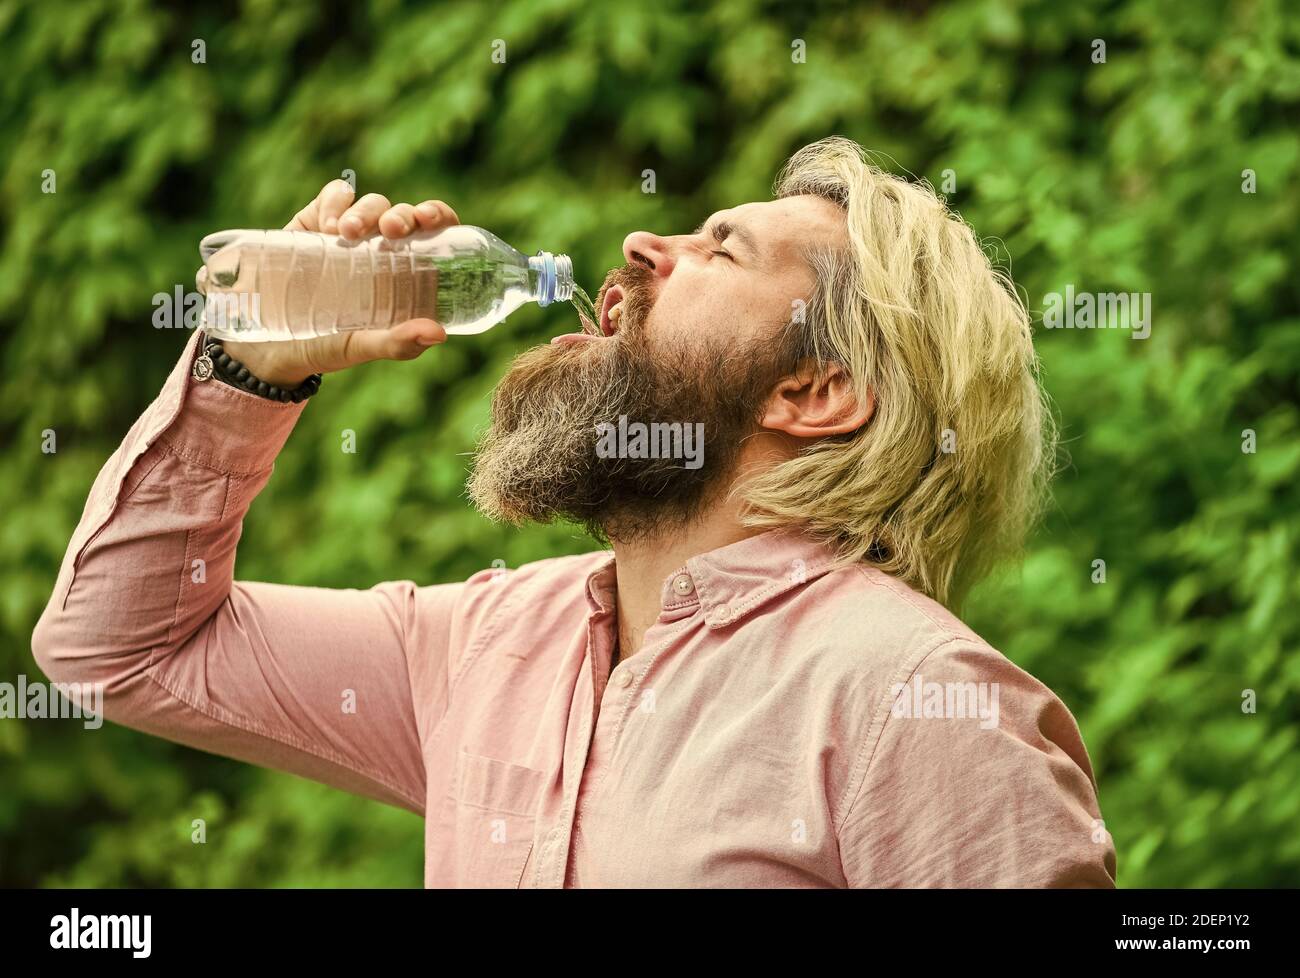 Chaleur estivale. Boire de l'eau claire. Équilibre de l'eau. Homme barbu touriste eau bouteille plastique nature fond. Un gars assoiffé boit des bouteilles Banque D'Images